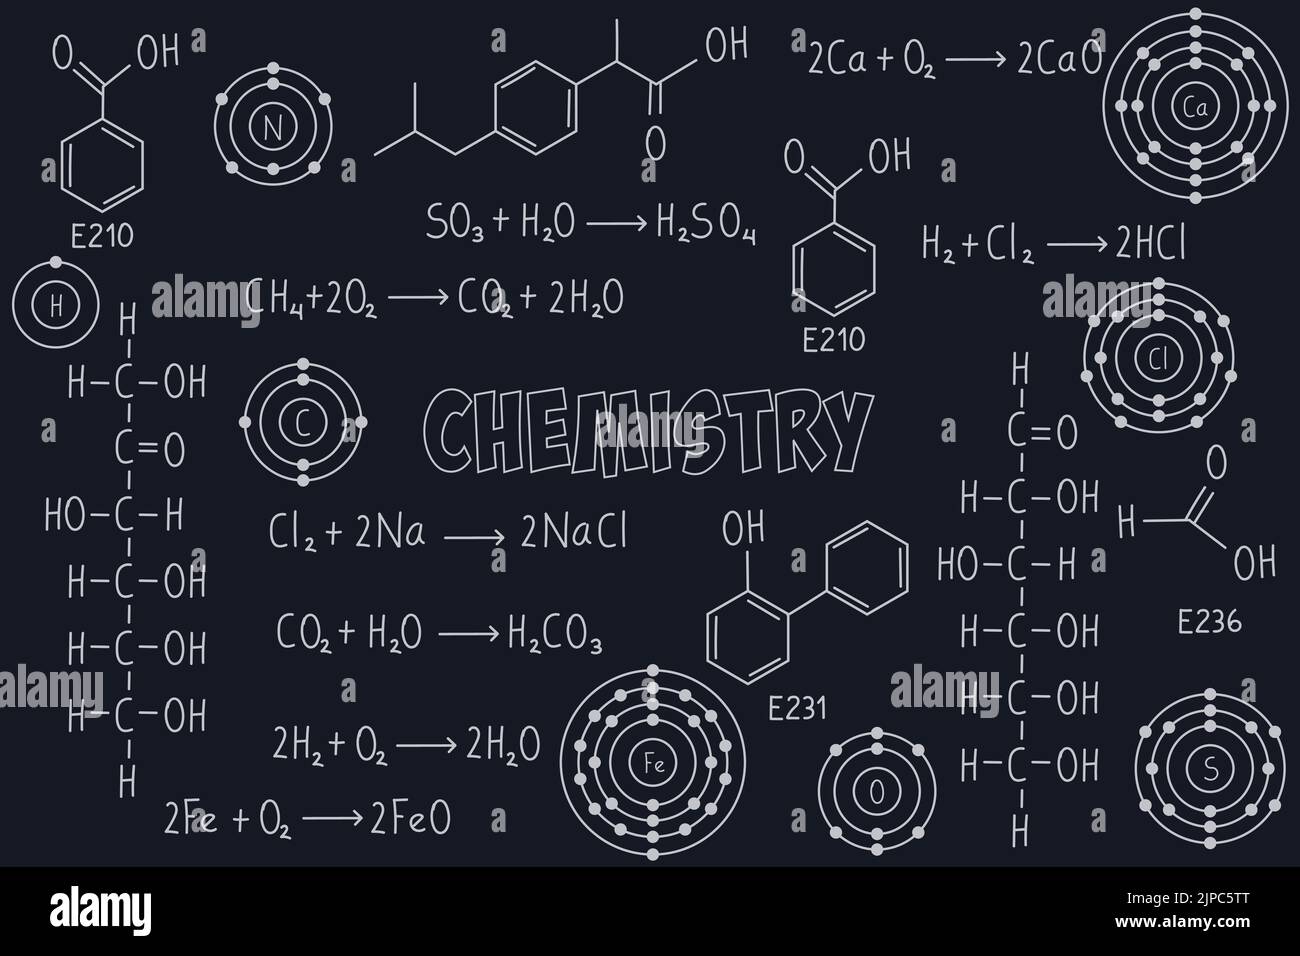 Übungsnotizen, chemische Formeln und Gleichungen, organische Chemie, chemische Reaktionen, Strukturformel, Atome chemischer Elemente, mit schwarzem ch Stock Vektor